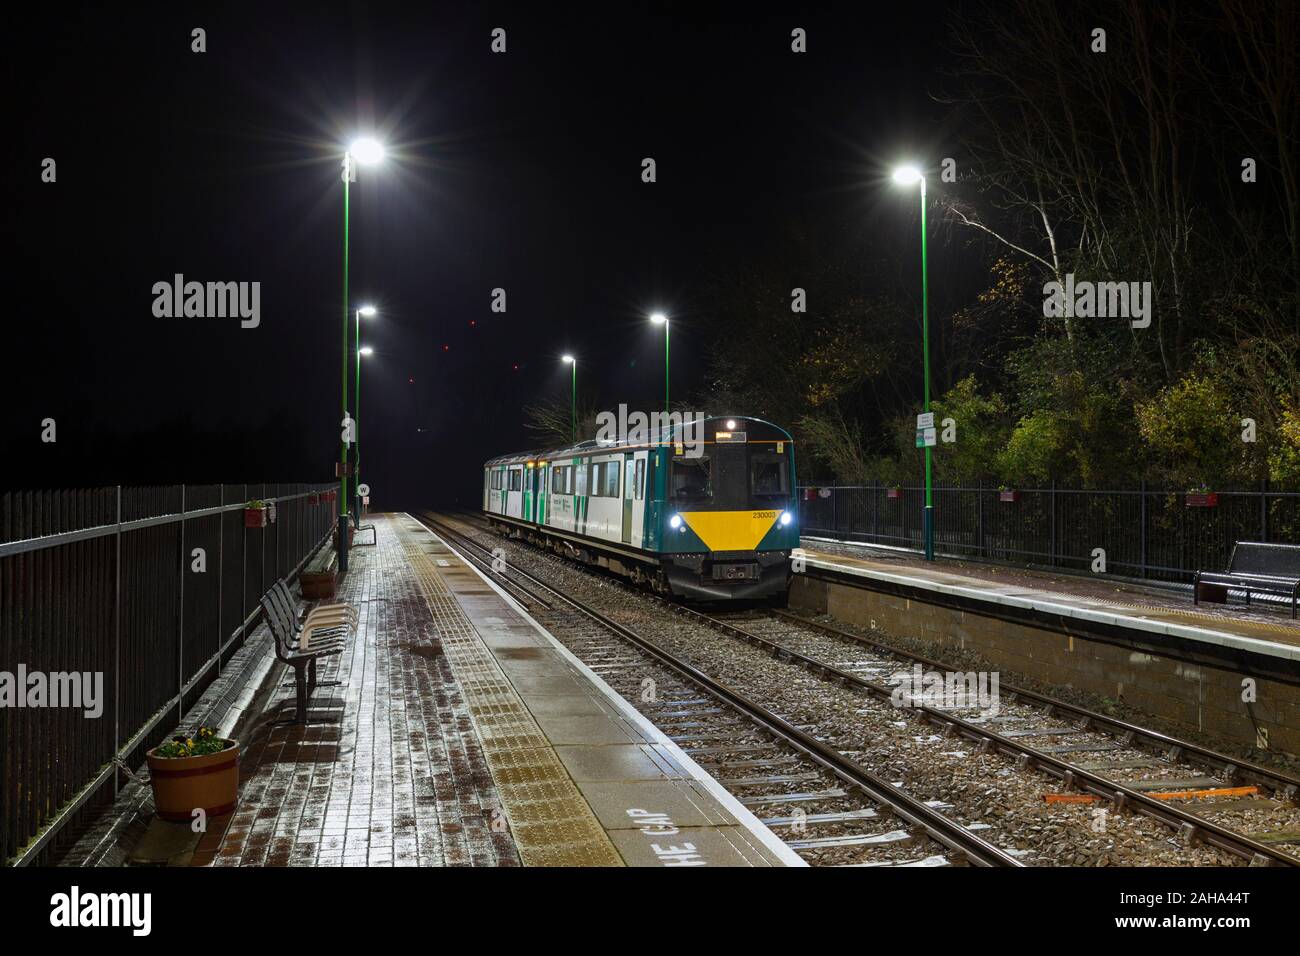 West Midlands ferroviaria classe Vivarail 230 230003 presso Millbrook stazione ferroviaria sulla Bedford - Bletchley Marston vale la linea in una notte buia Foto Stock